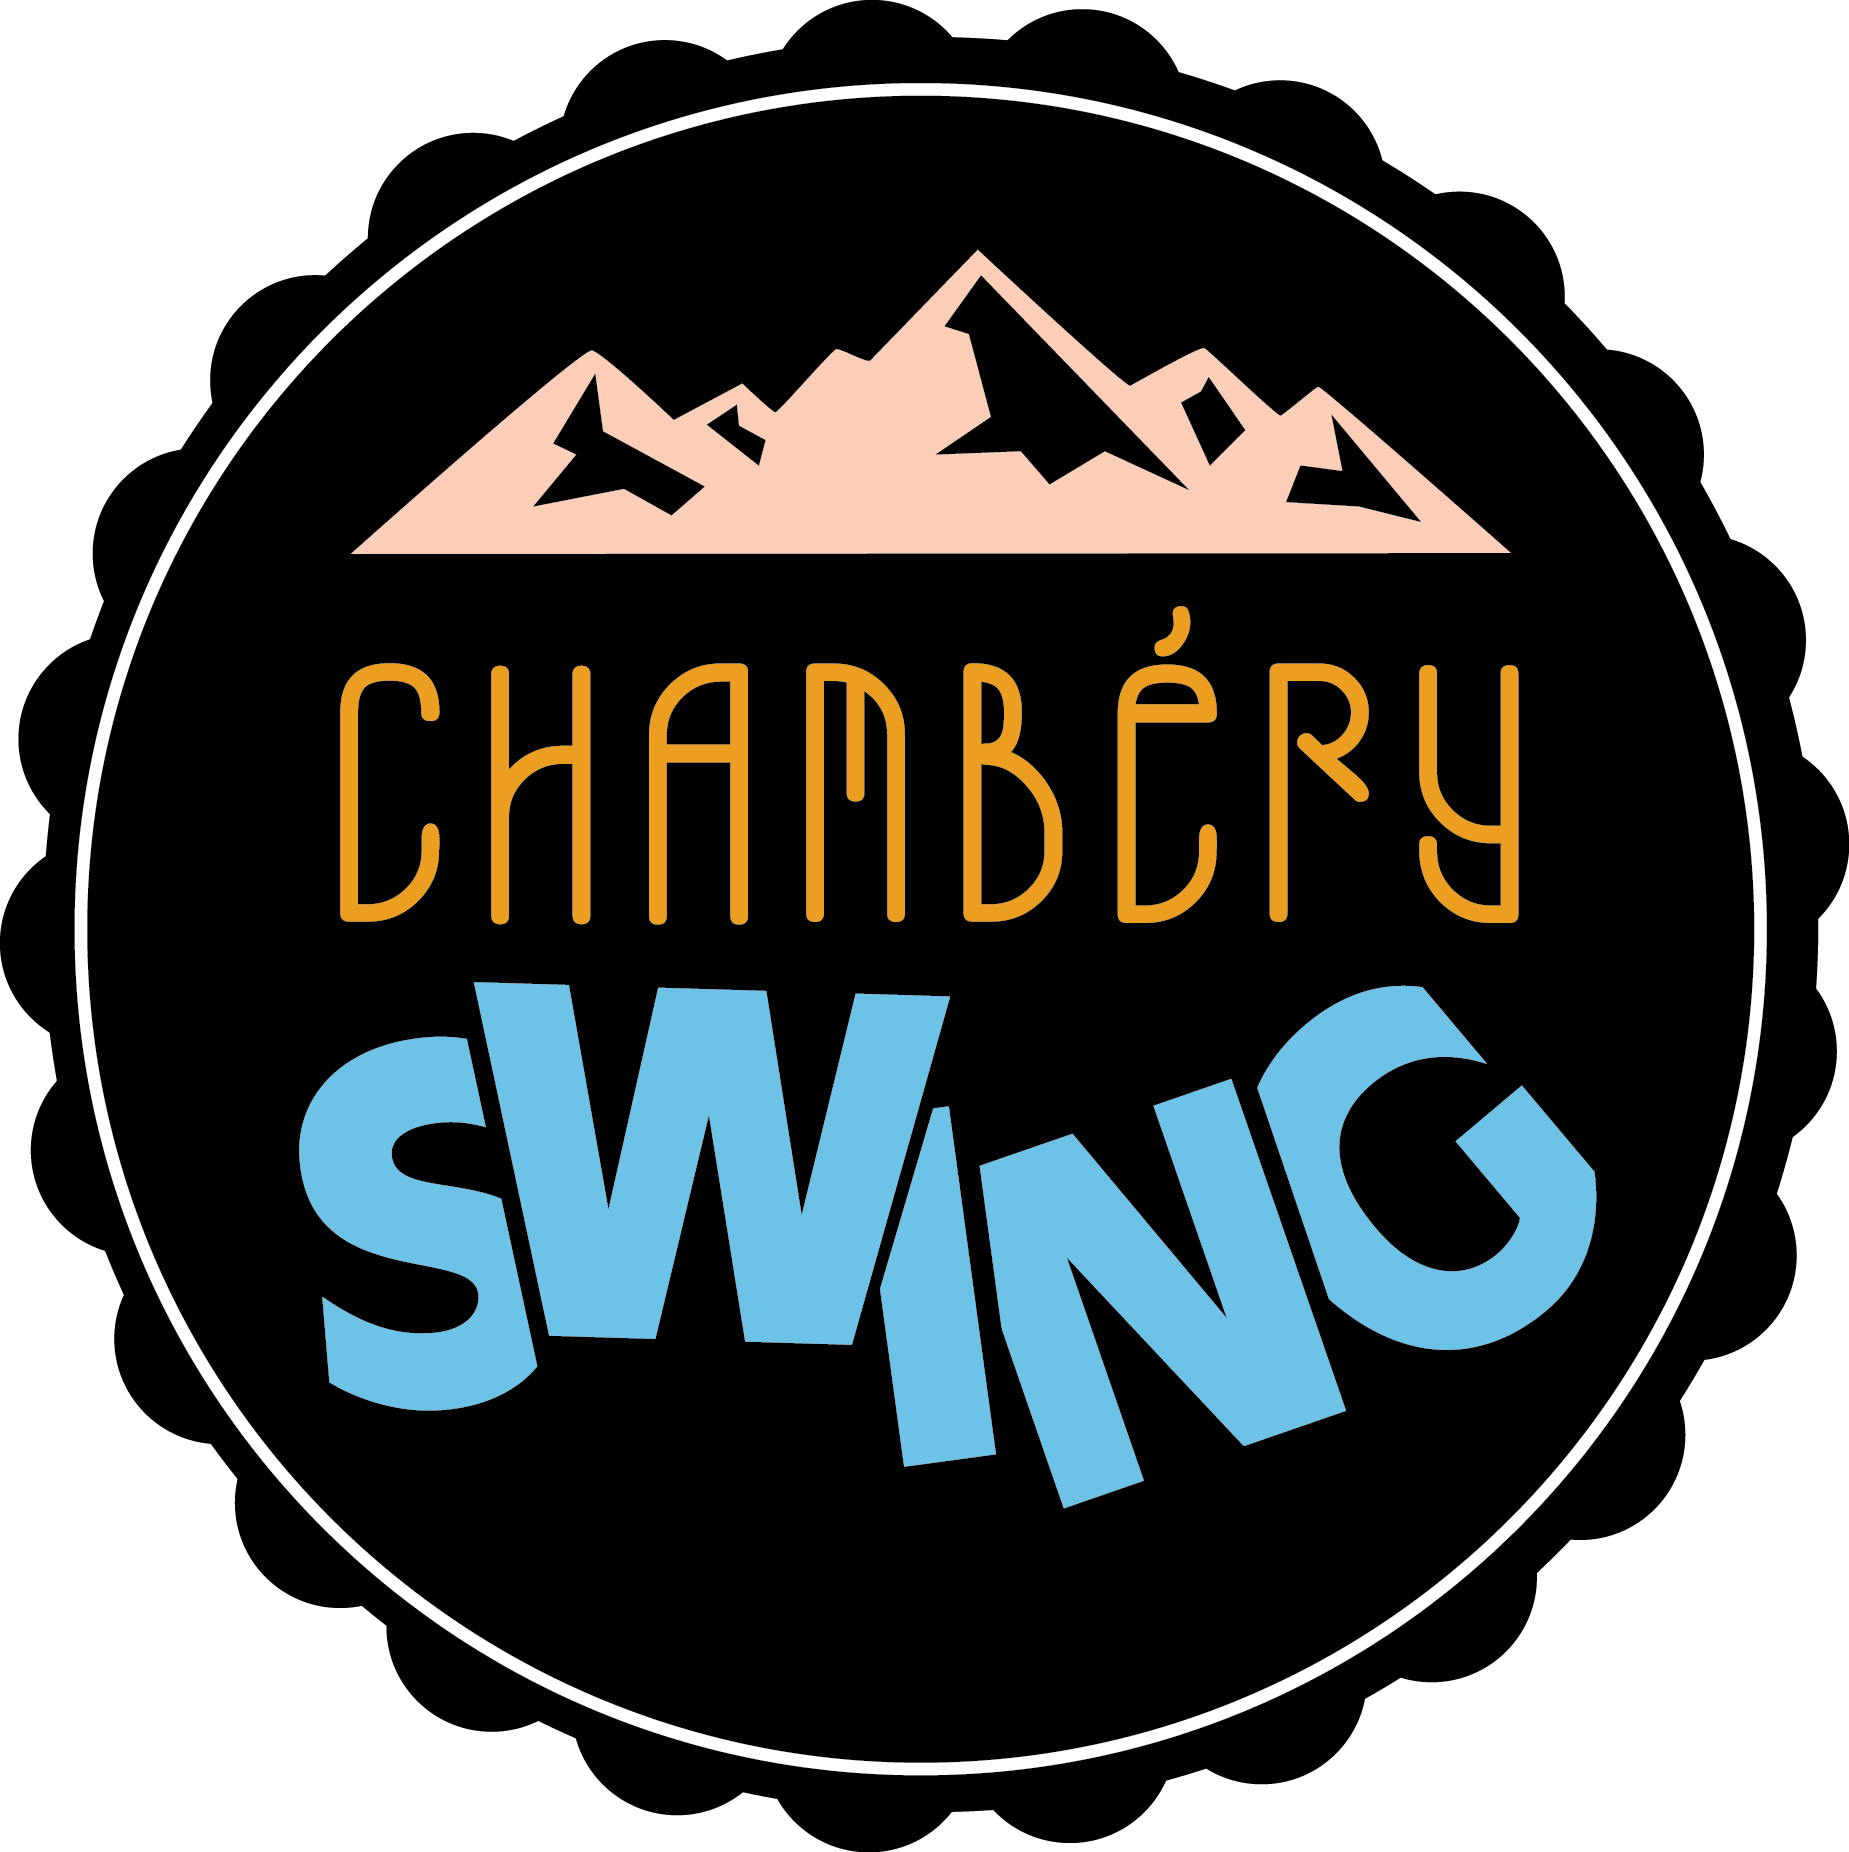 Chambery Swing